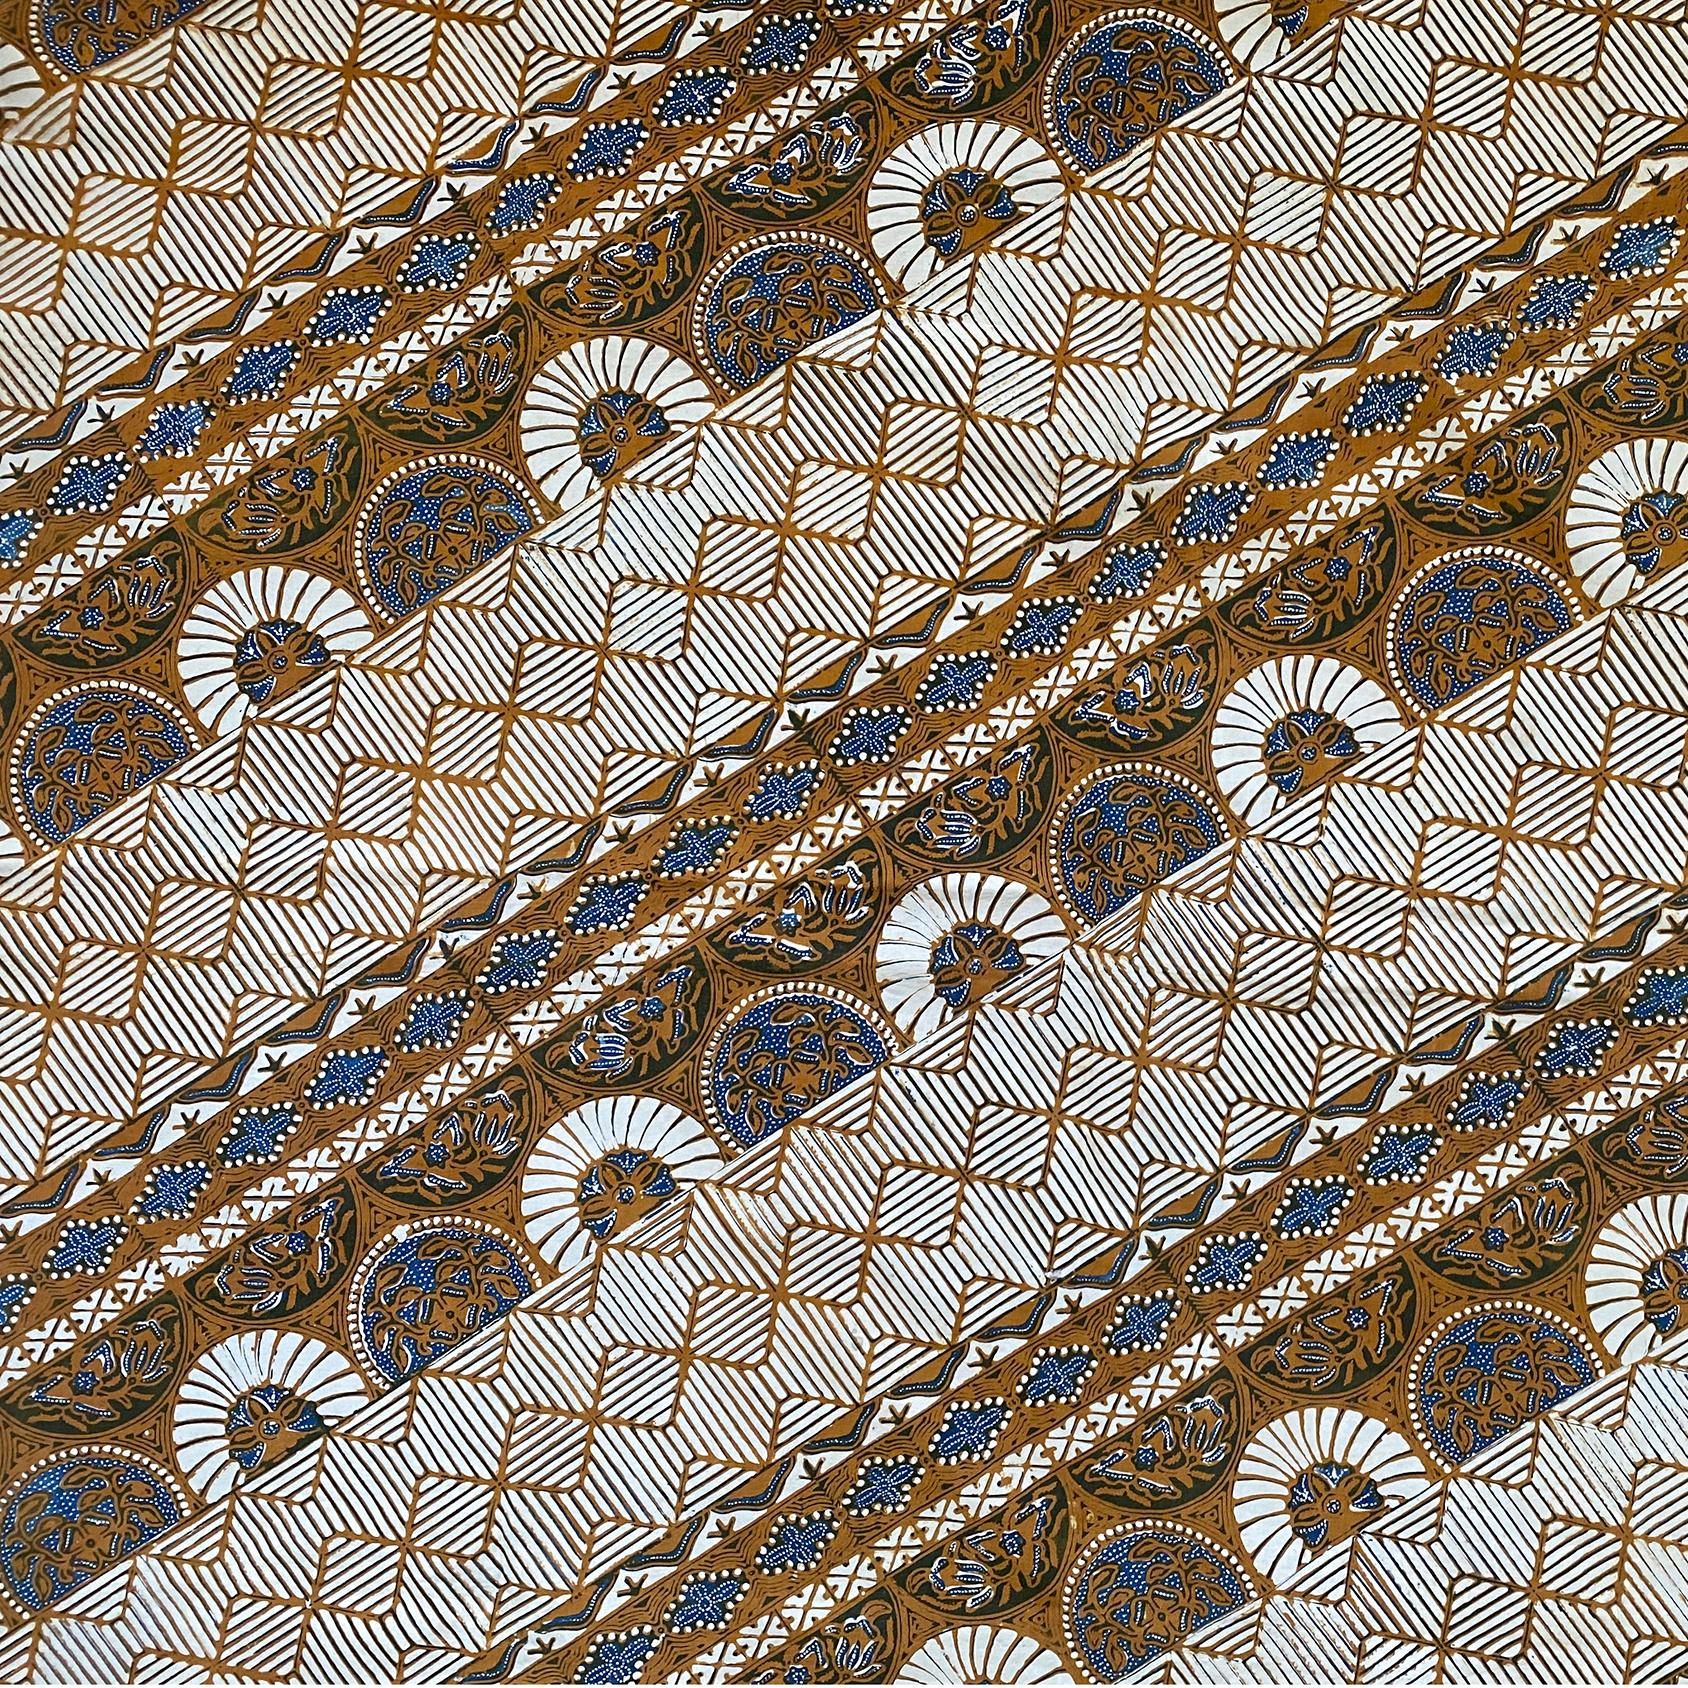 Batik, Kain, Hüfttuch-Kleidungsstück, Java, Mitte des 20. Jahrhunderts. Wird sowohl von Männern als auch von Frauen getragen. Schwarz, blau, soga-braun und ecru. Die Designs werden mit der Wachsresistfärbemethode aufgebracht.
Typisch für die in